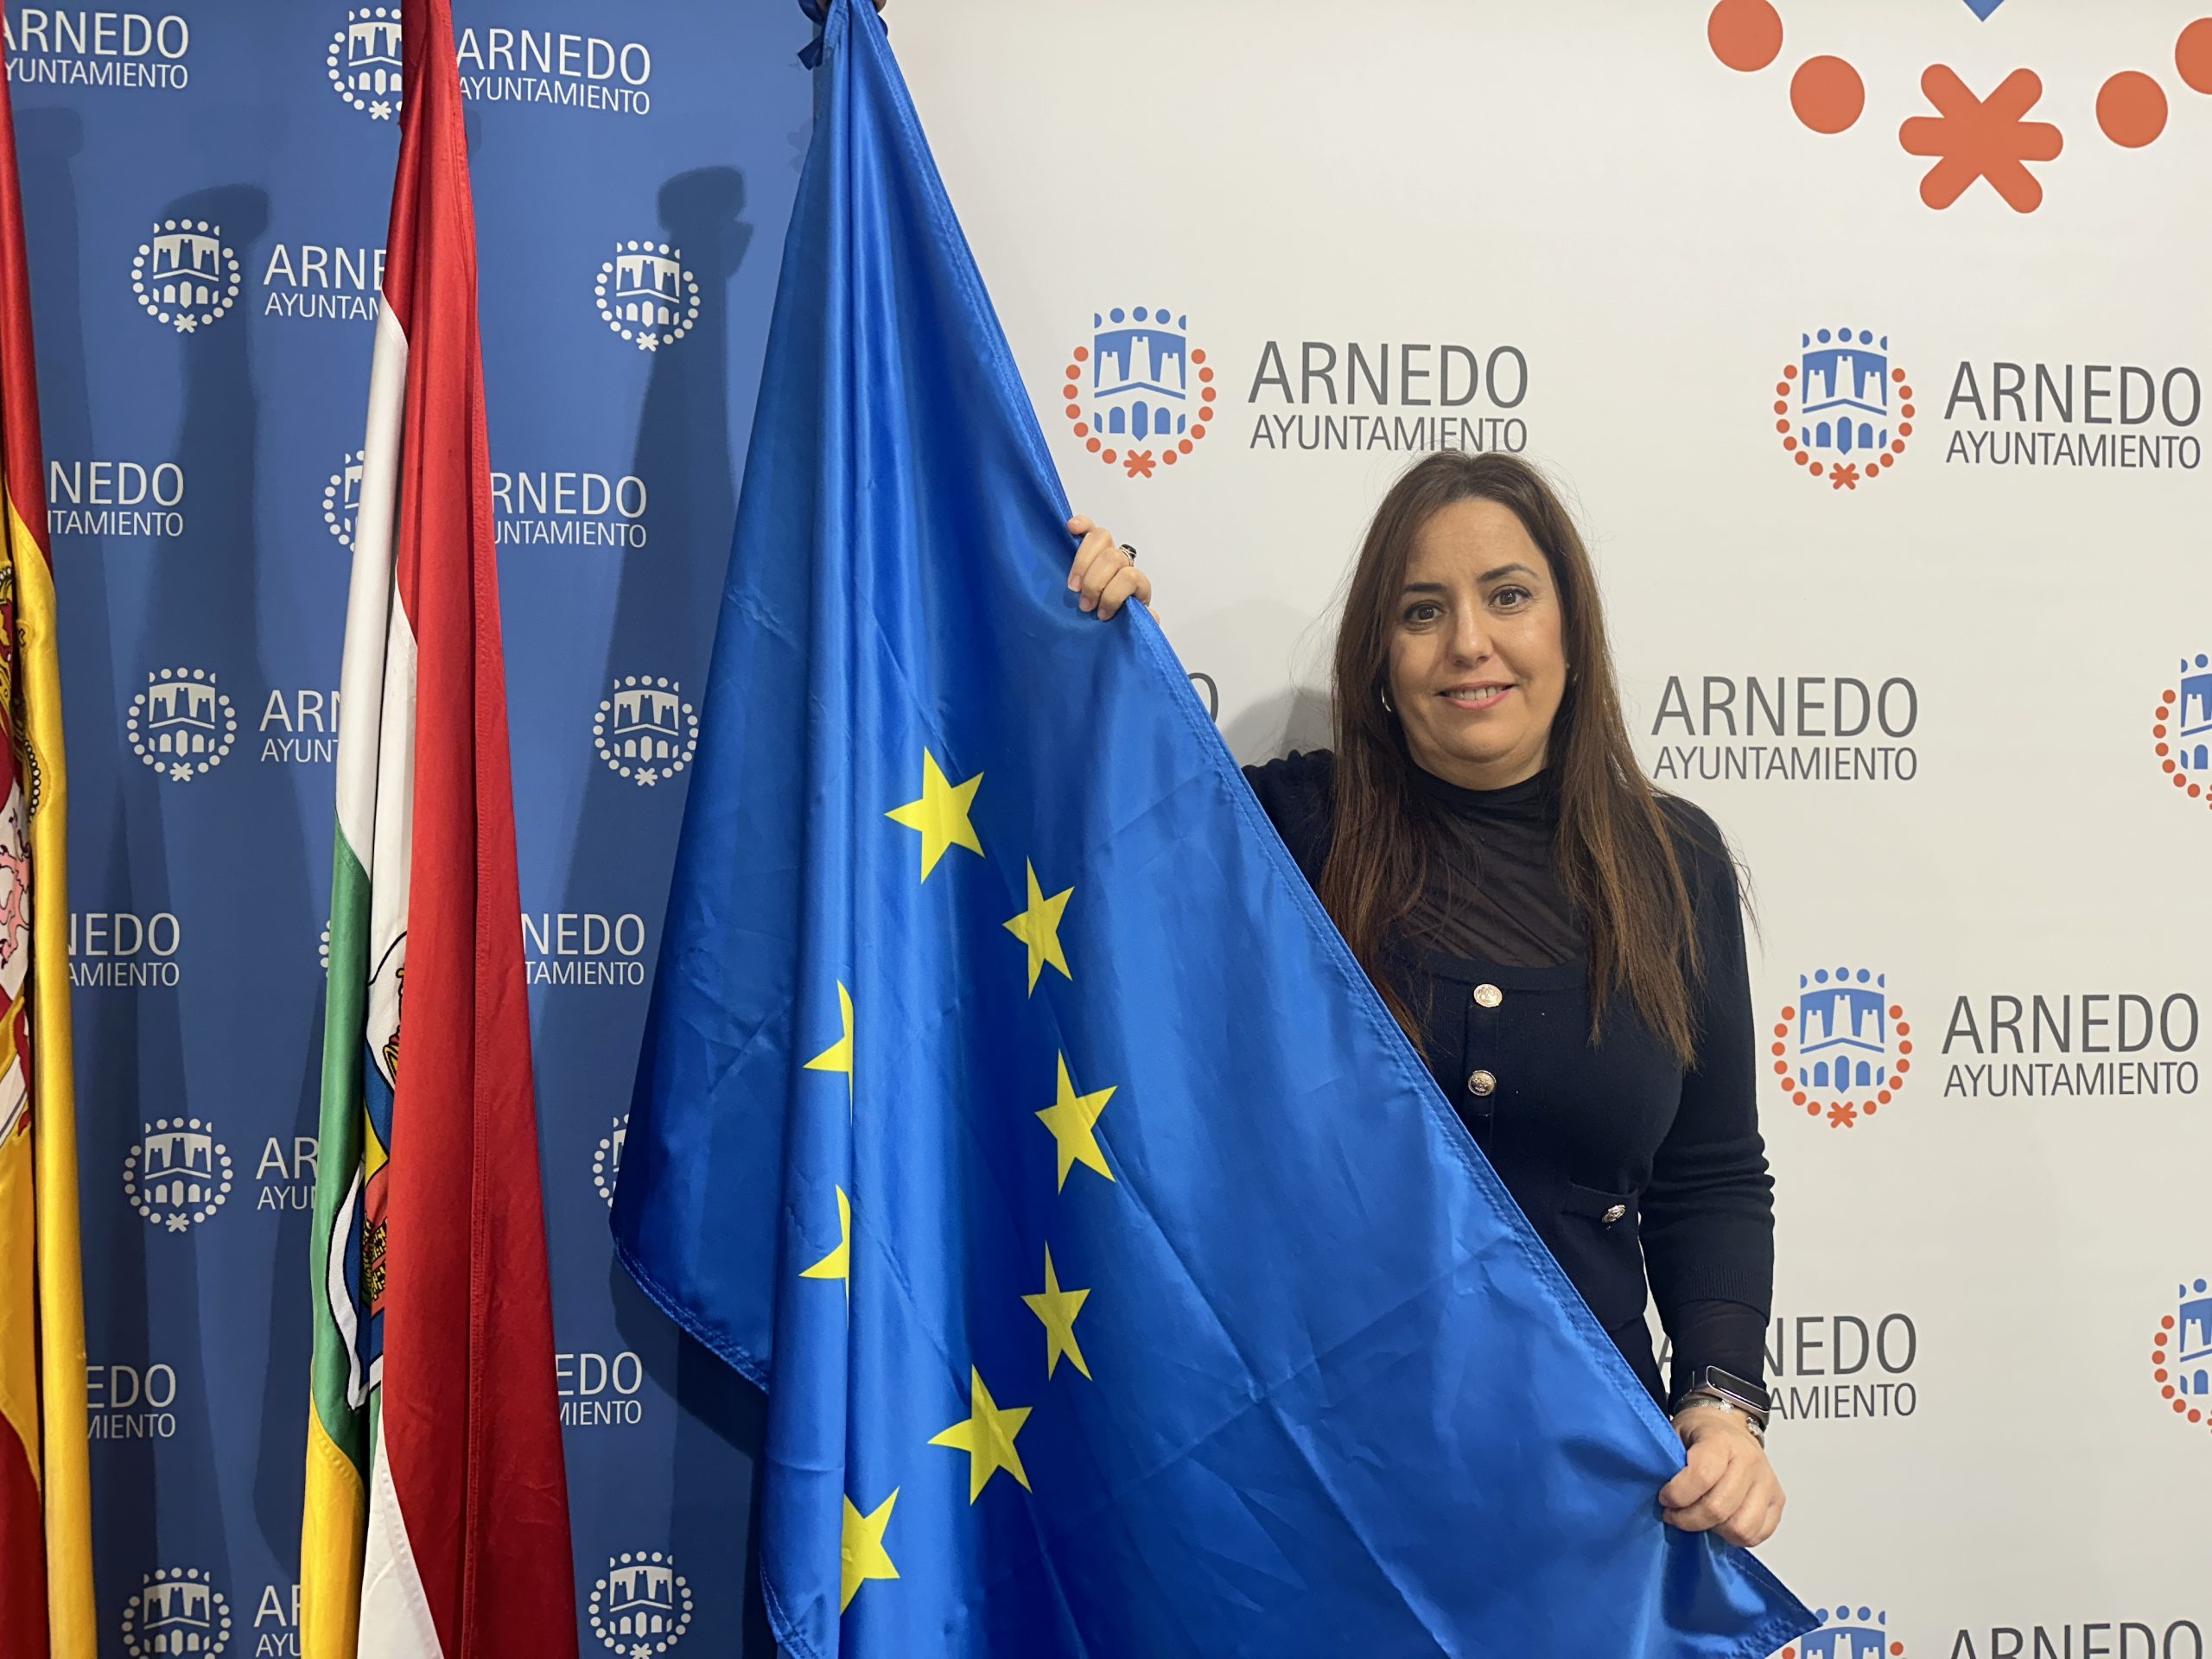 Arnedo celebra el Día de Europa con diversas actividades